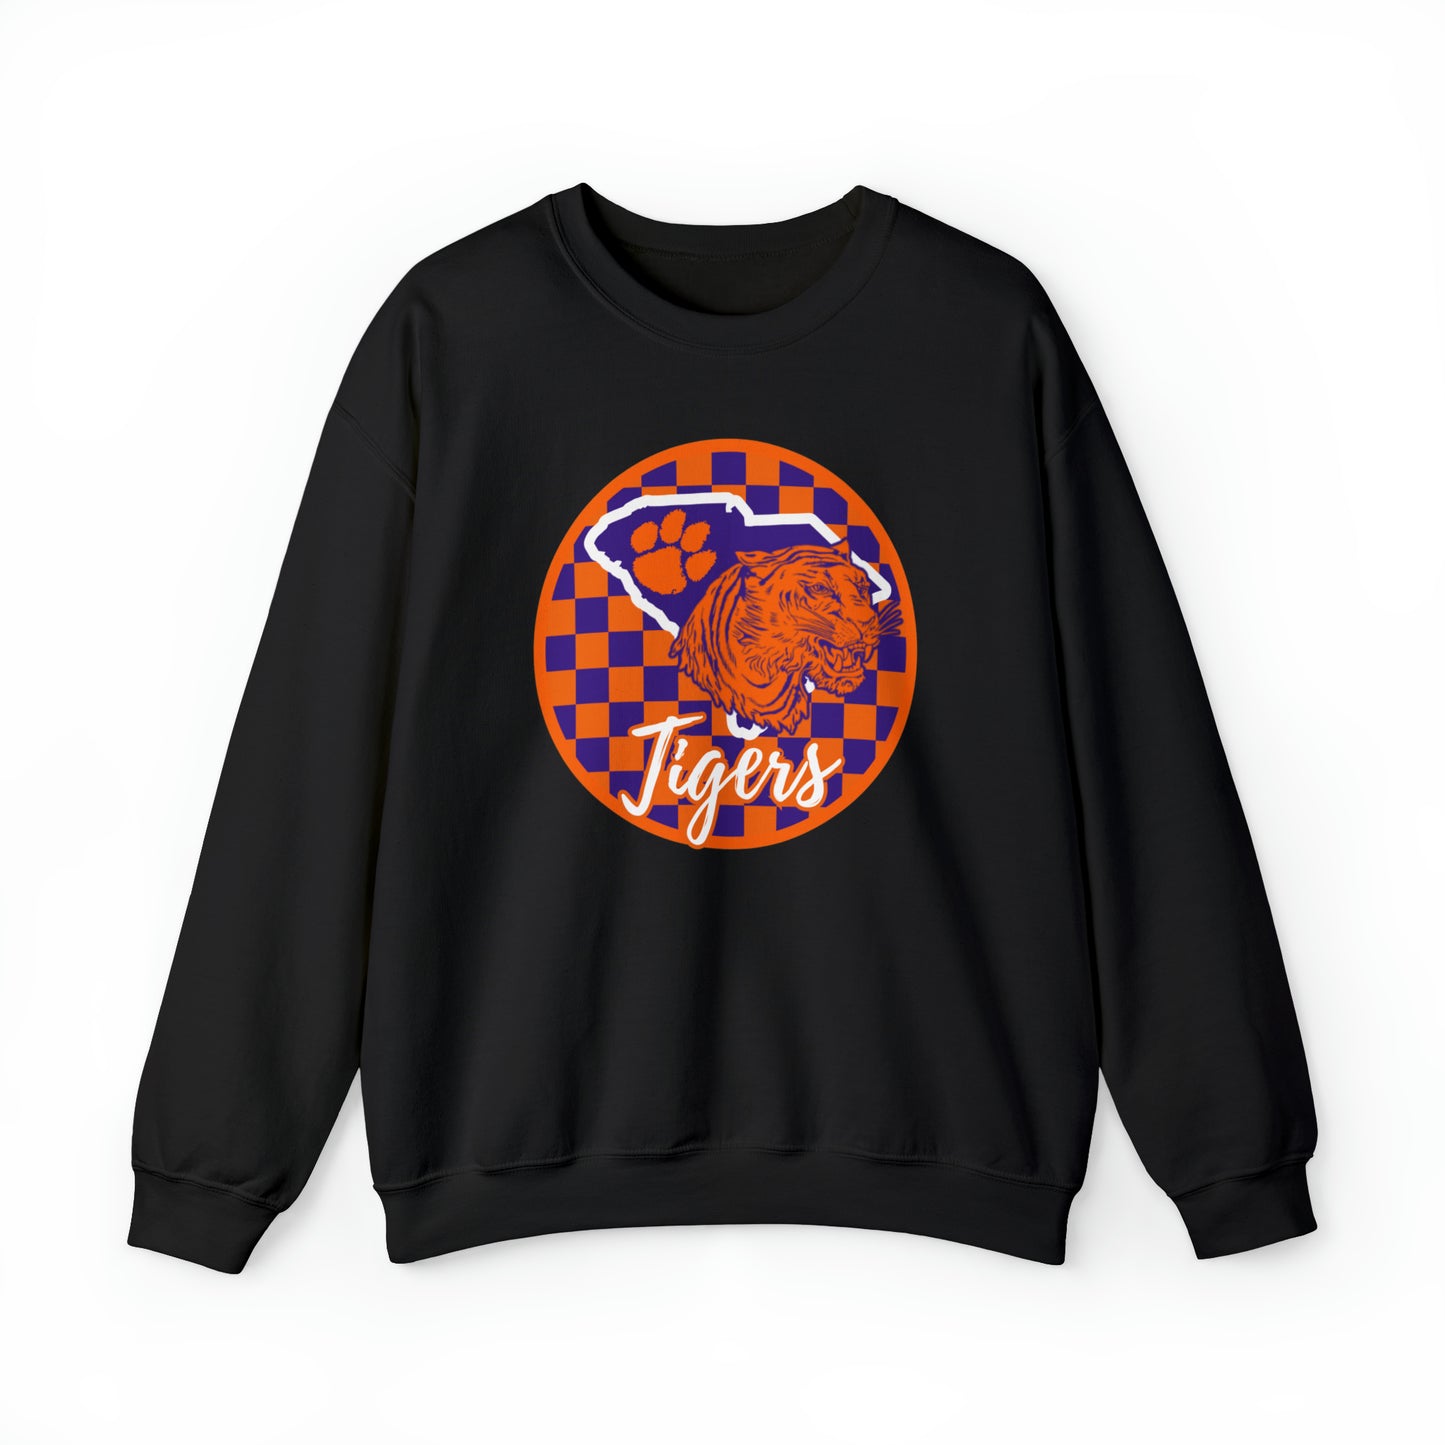 Clemson Tigers Checkered Sweatshirt